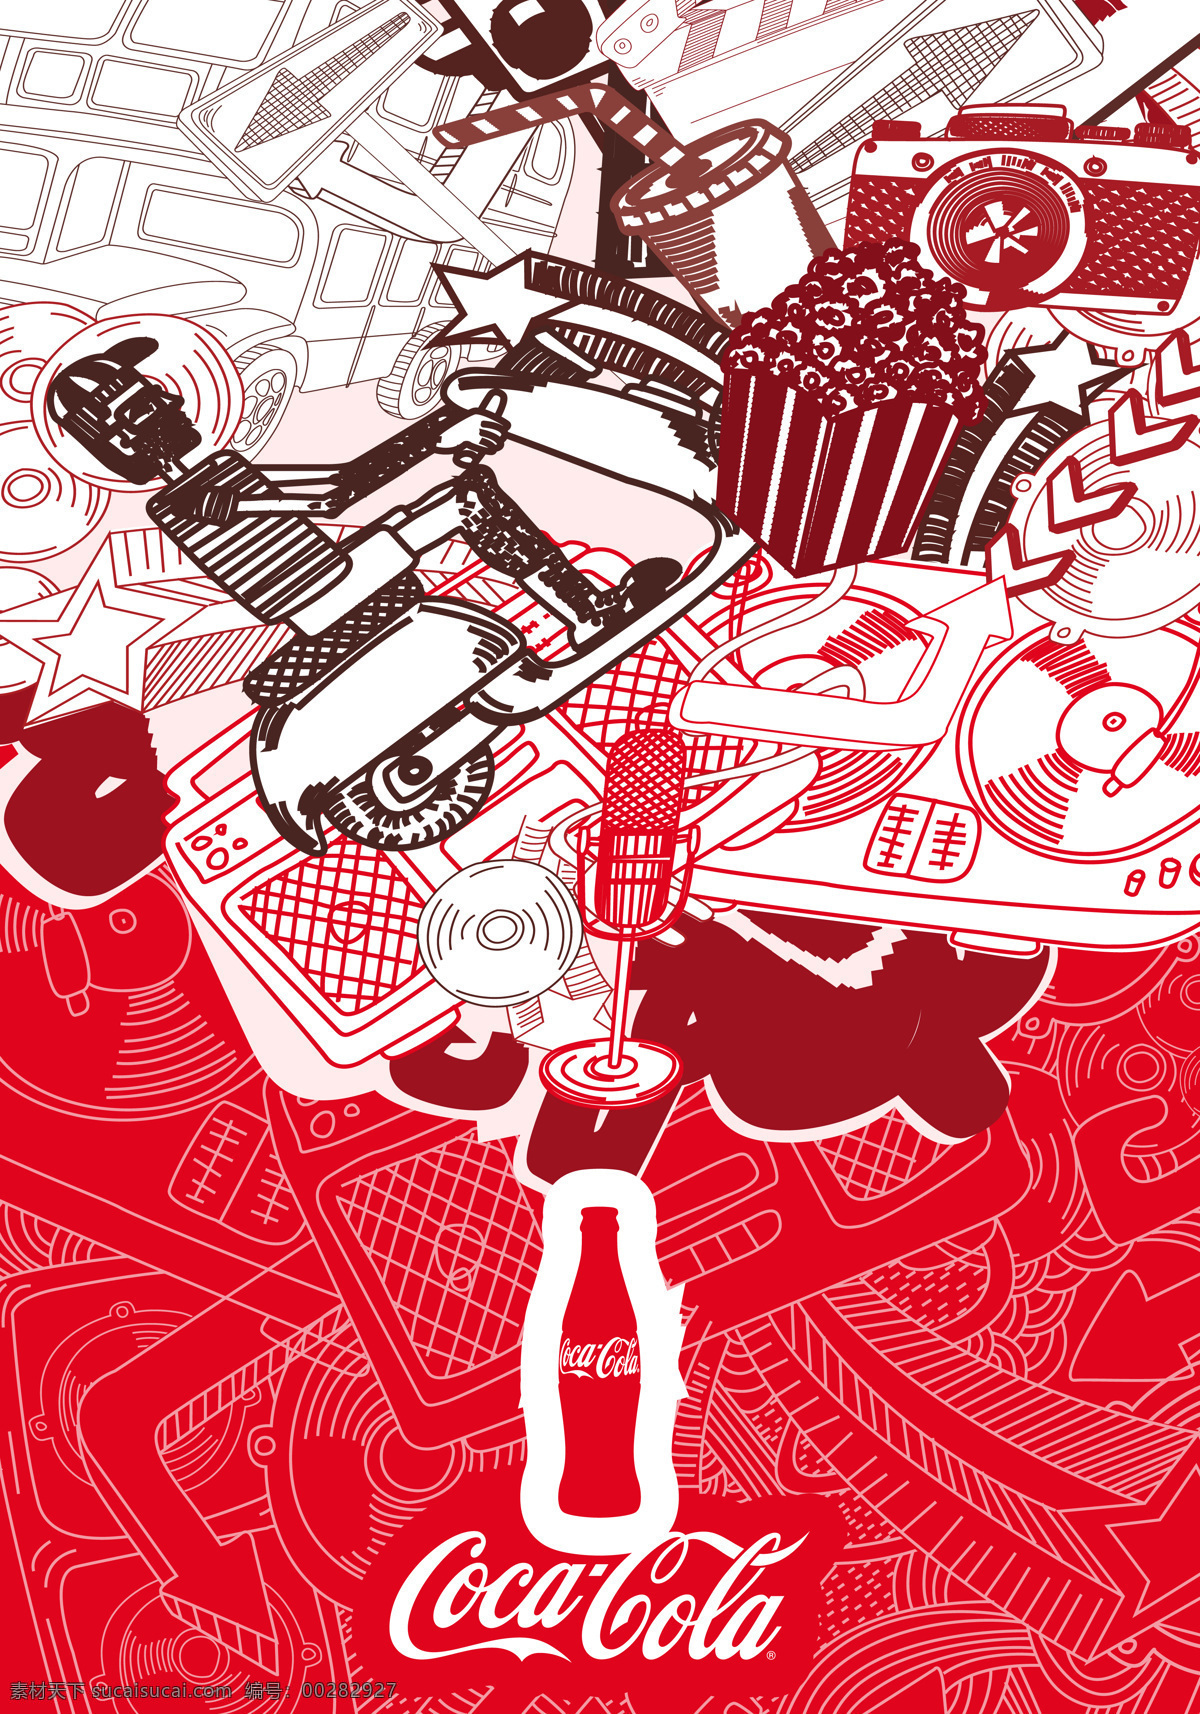 可口可乐 形象 广告 抽象画 人物 电瓶车 标志 涂鸦 经典 红色